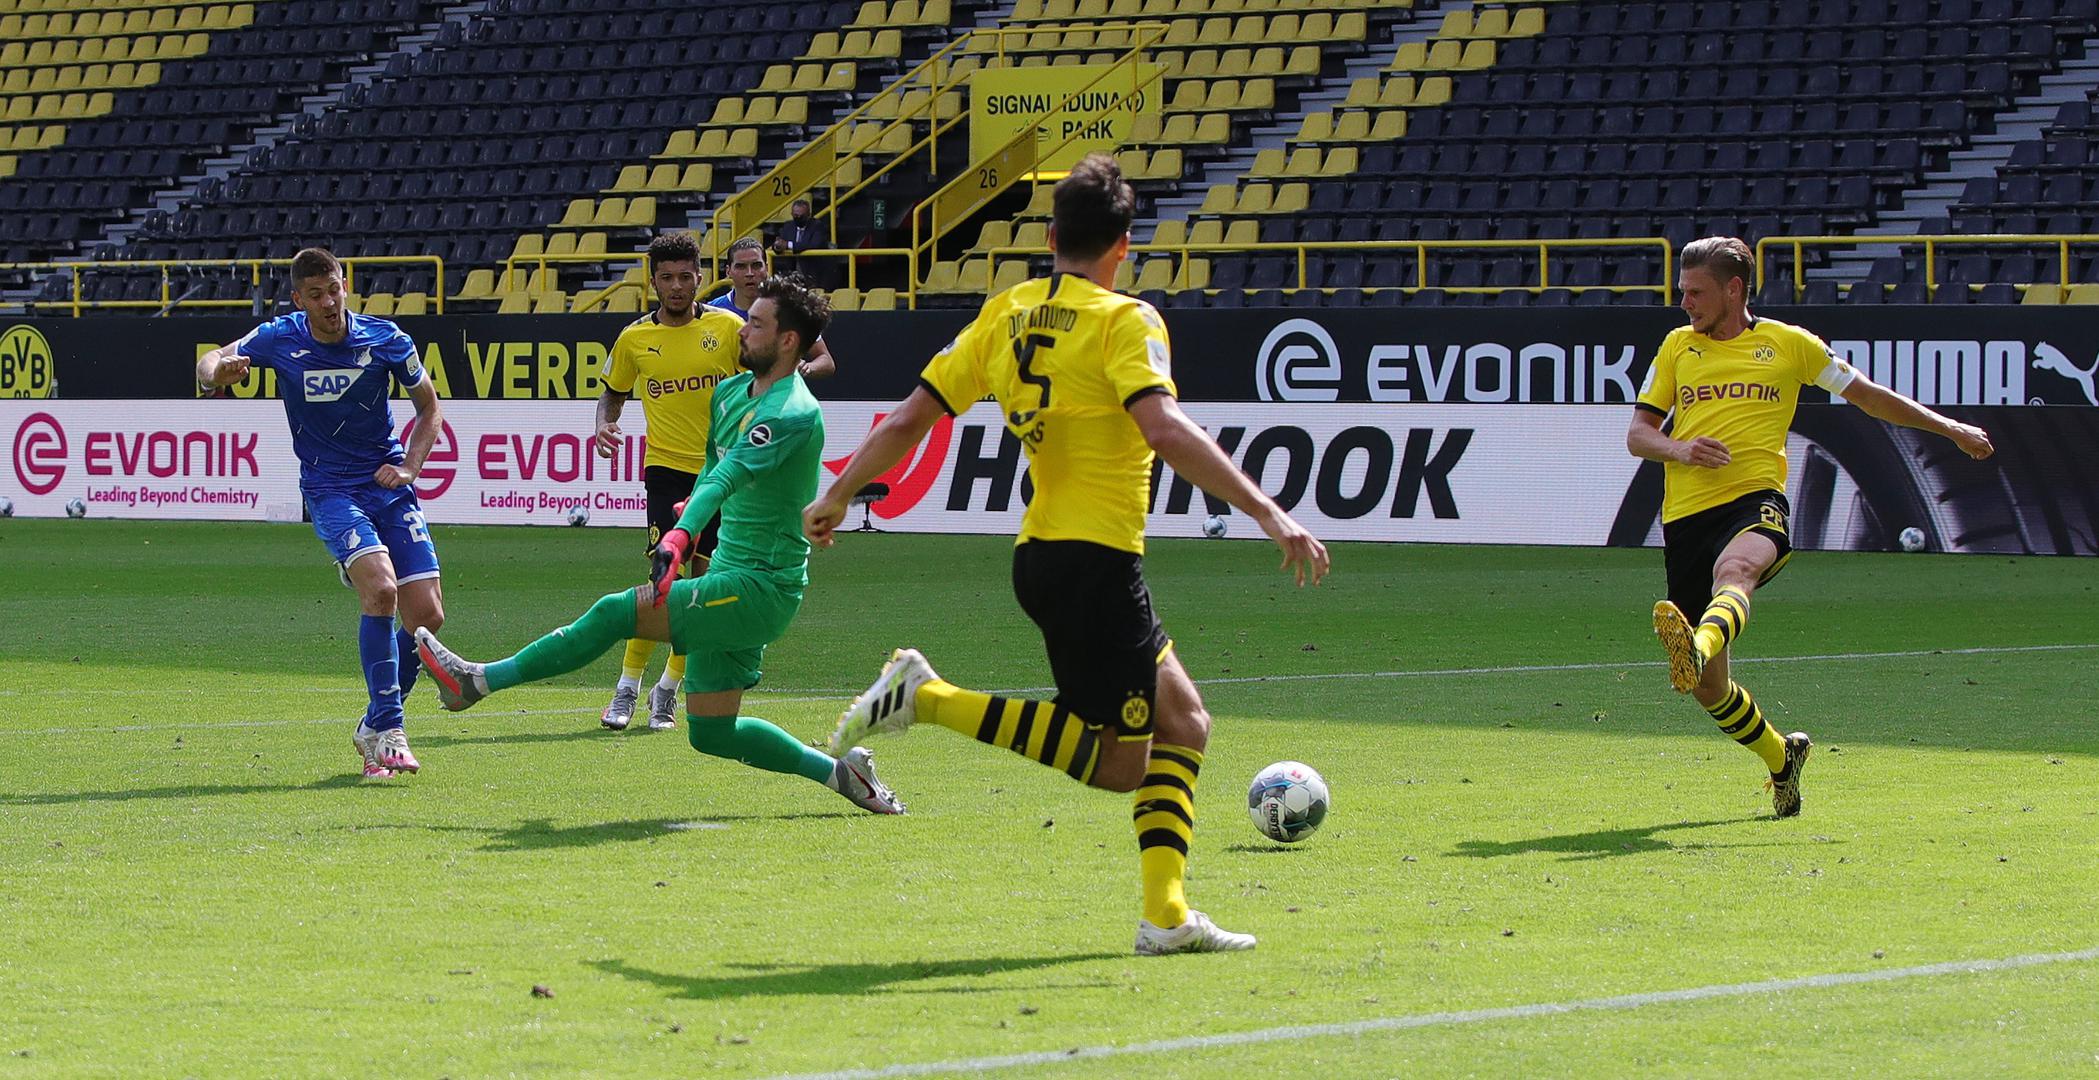 Naime, postao je prvi igrač u povijesti Bundeslige koji je u Dortmundu zabio četiri gola za gostujuću momčad